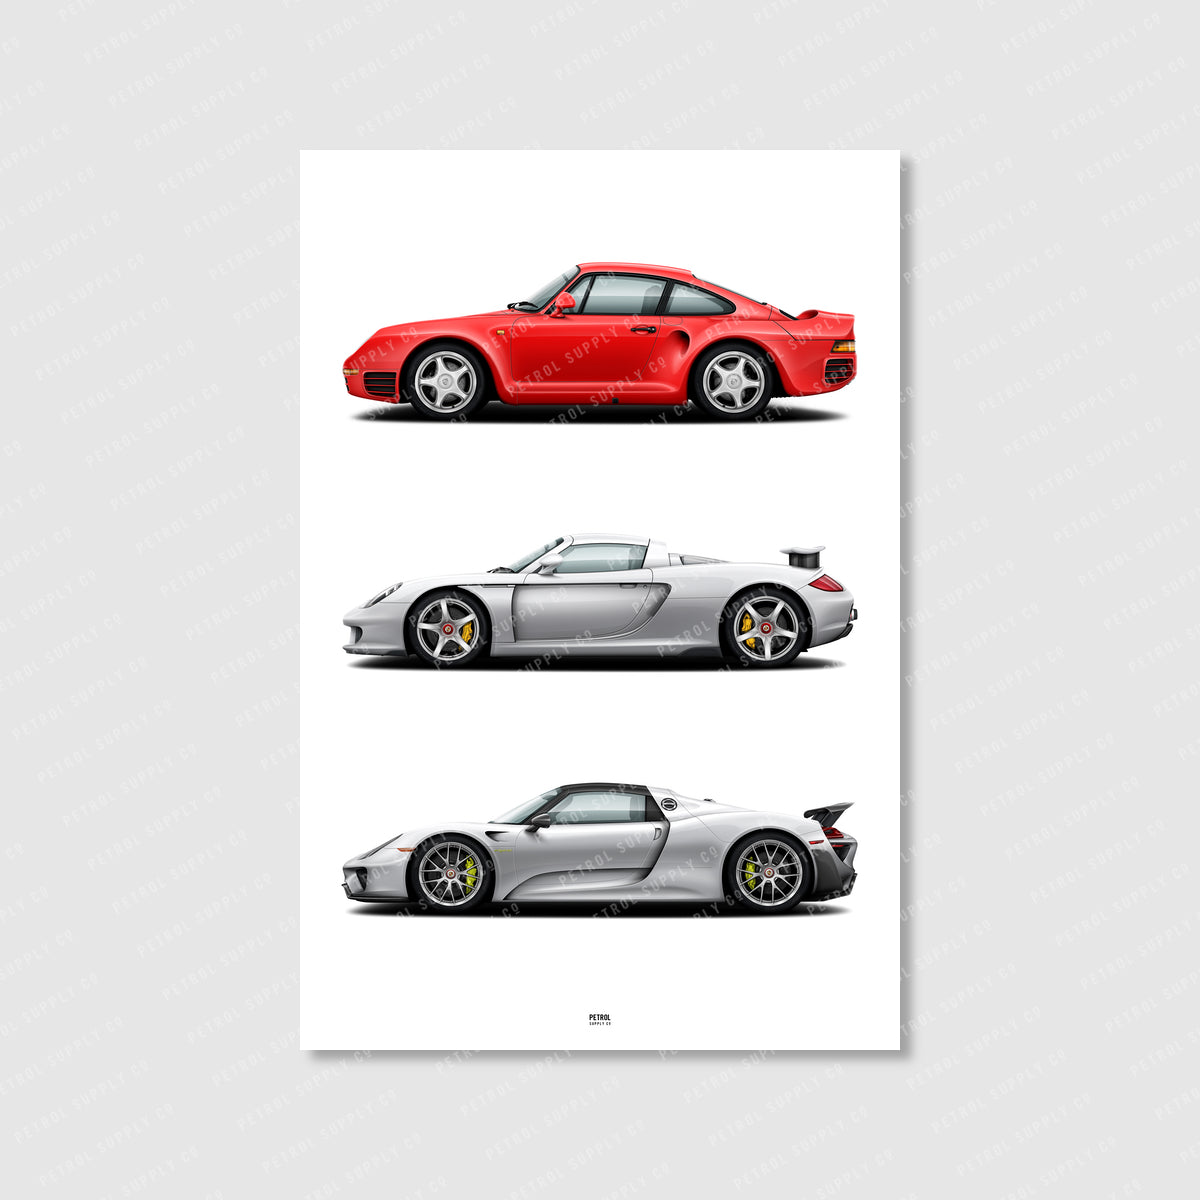 Stuttgart Supercars Poster - Porsche 959, Porsche Carrera GT, Porsche 918 Spyder